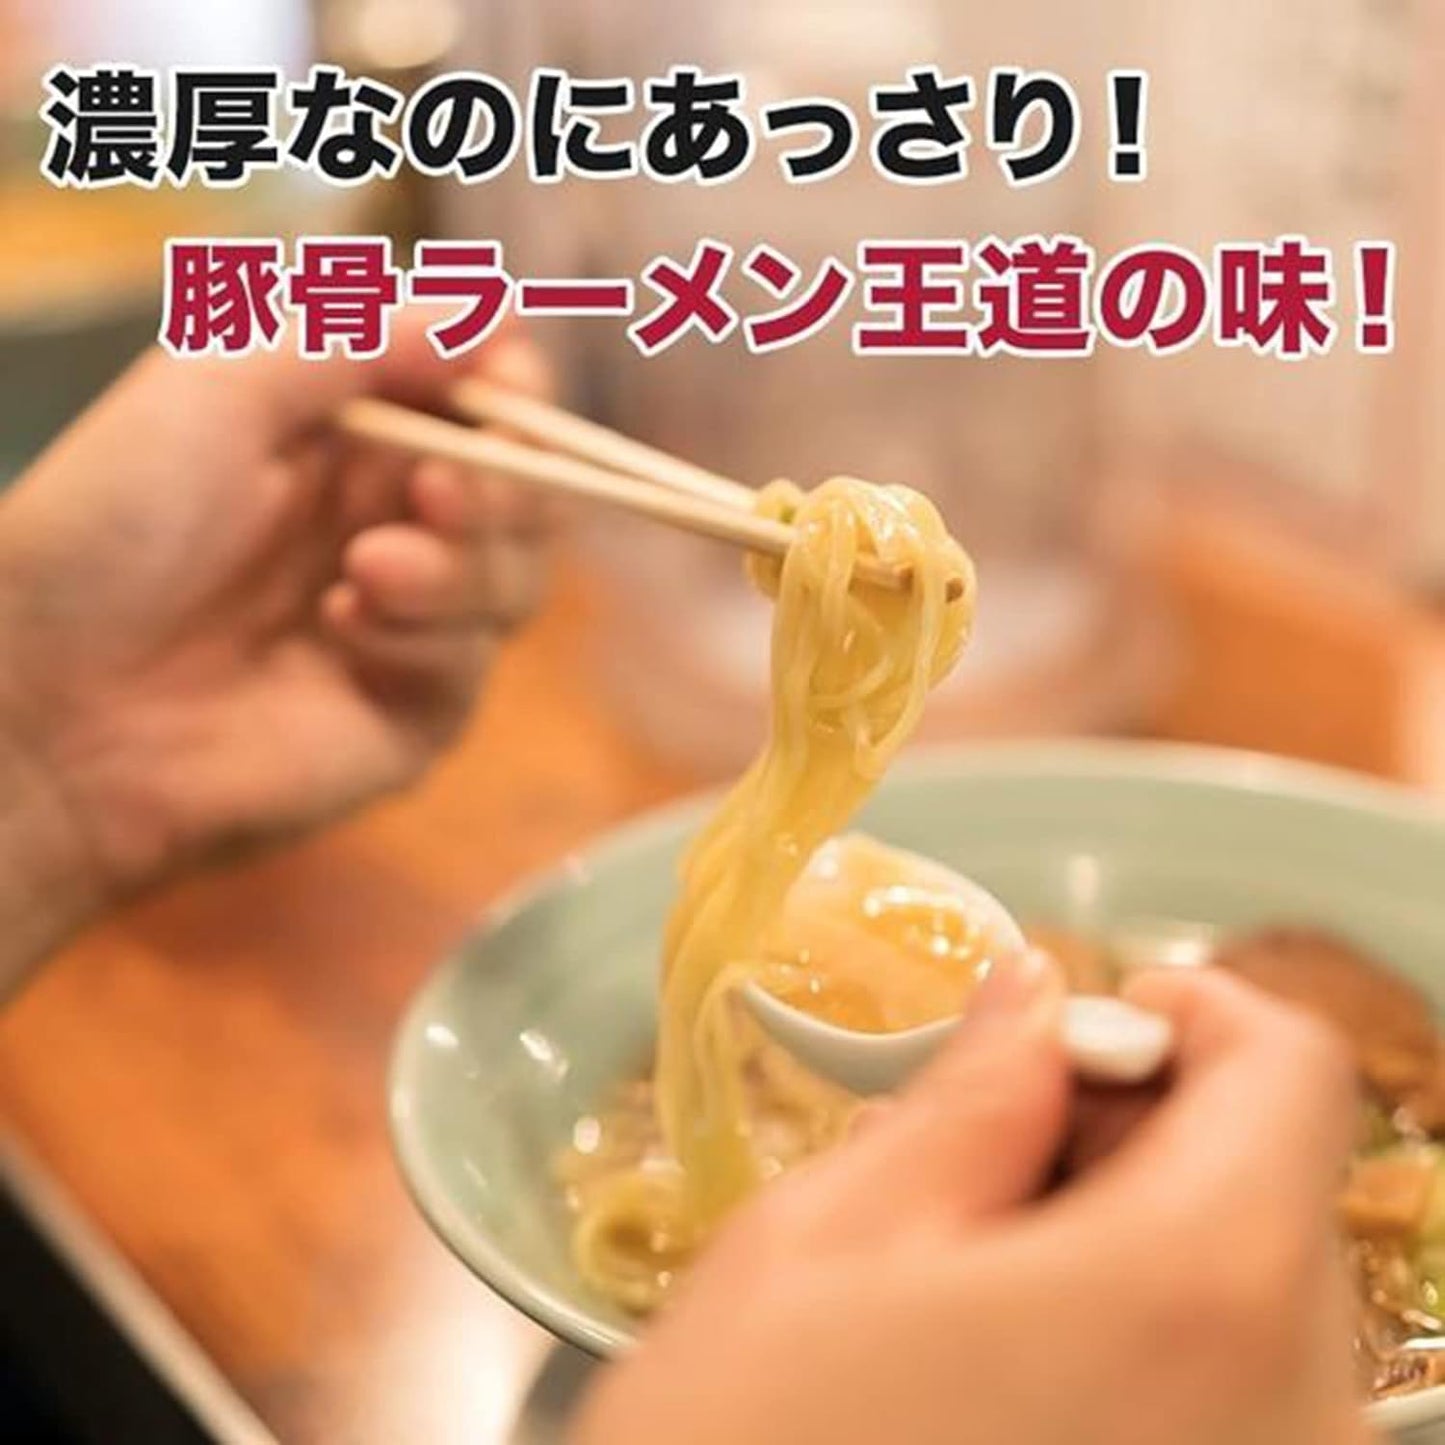 福岡県 博多長浜豚骨とんこつラーメン 九州美味か麺コレクション 豚骨味